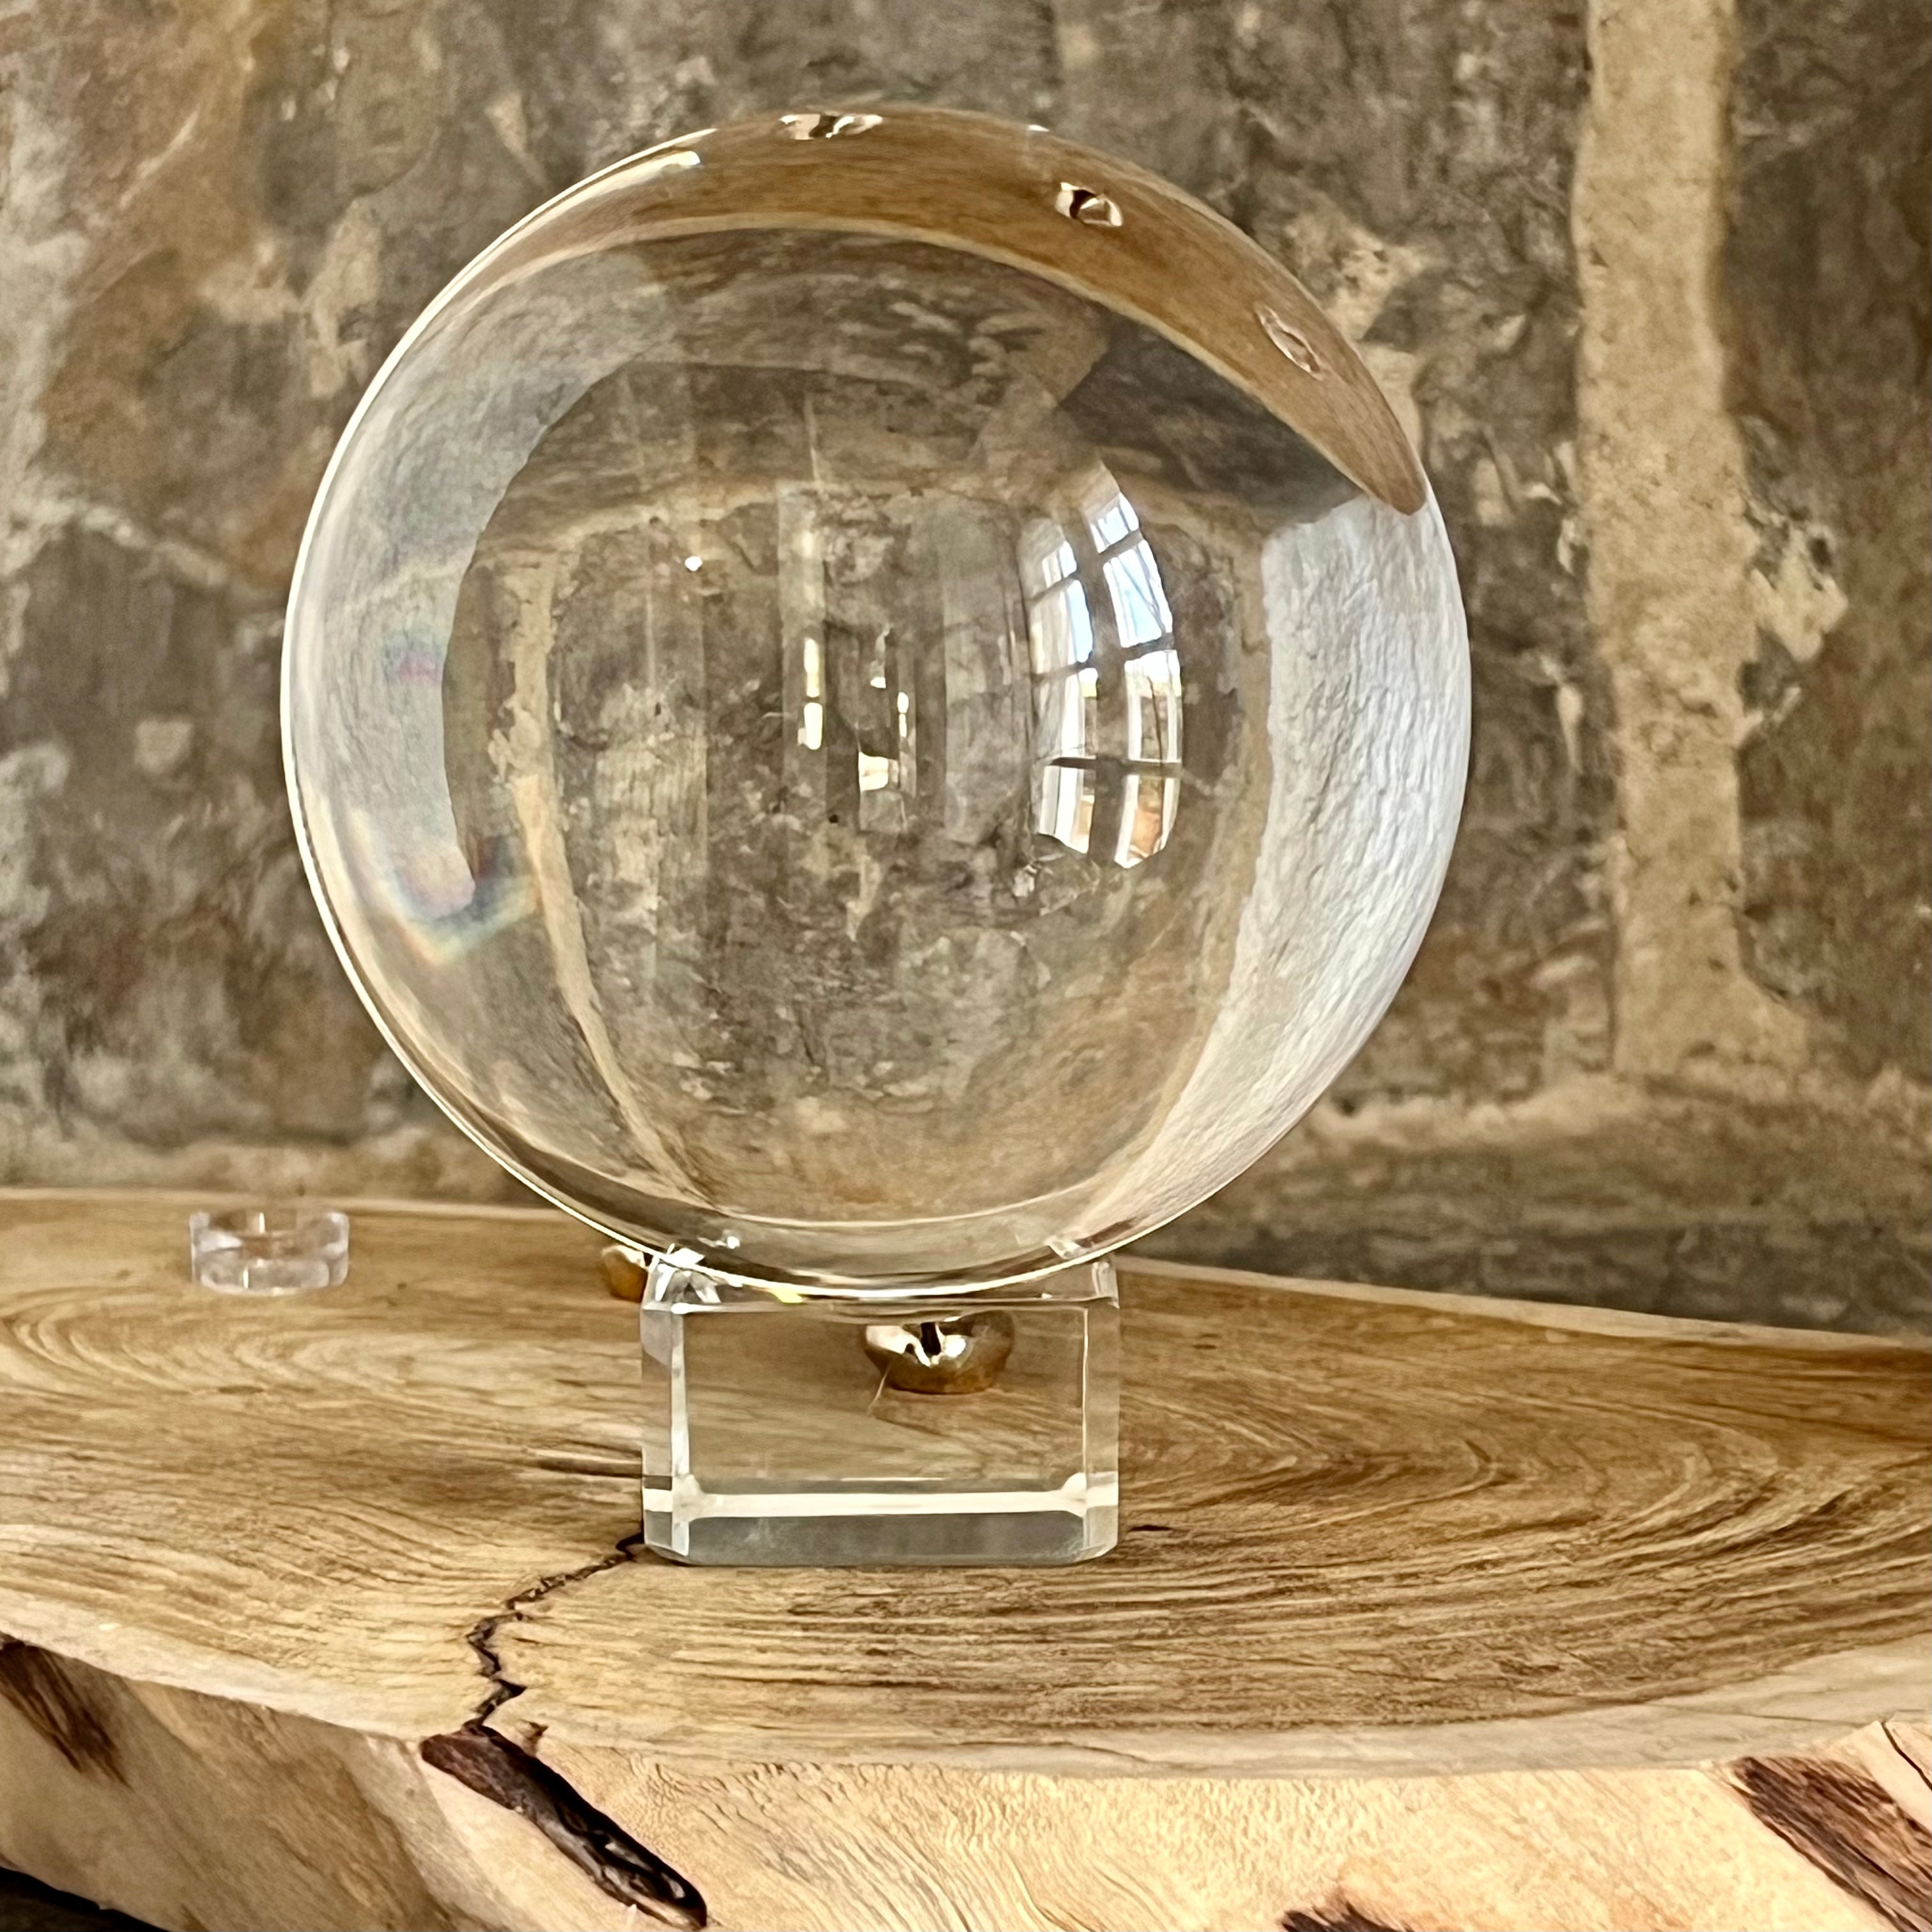 Boule de cristal en verre - Qualité supérieure - ÉSOTÉRISME/BOULE DE CRISTAL  - ETOILE HARMONIE